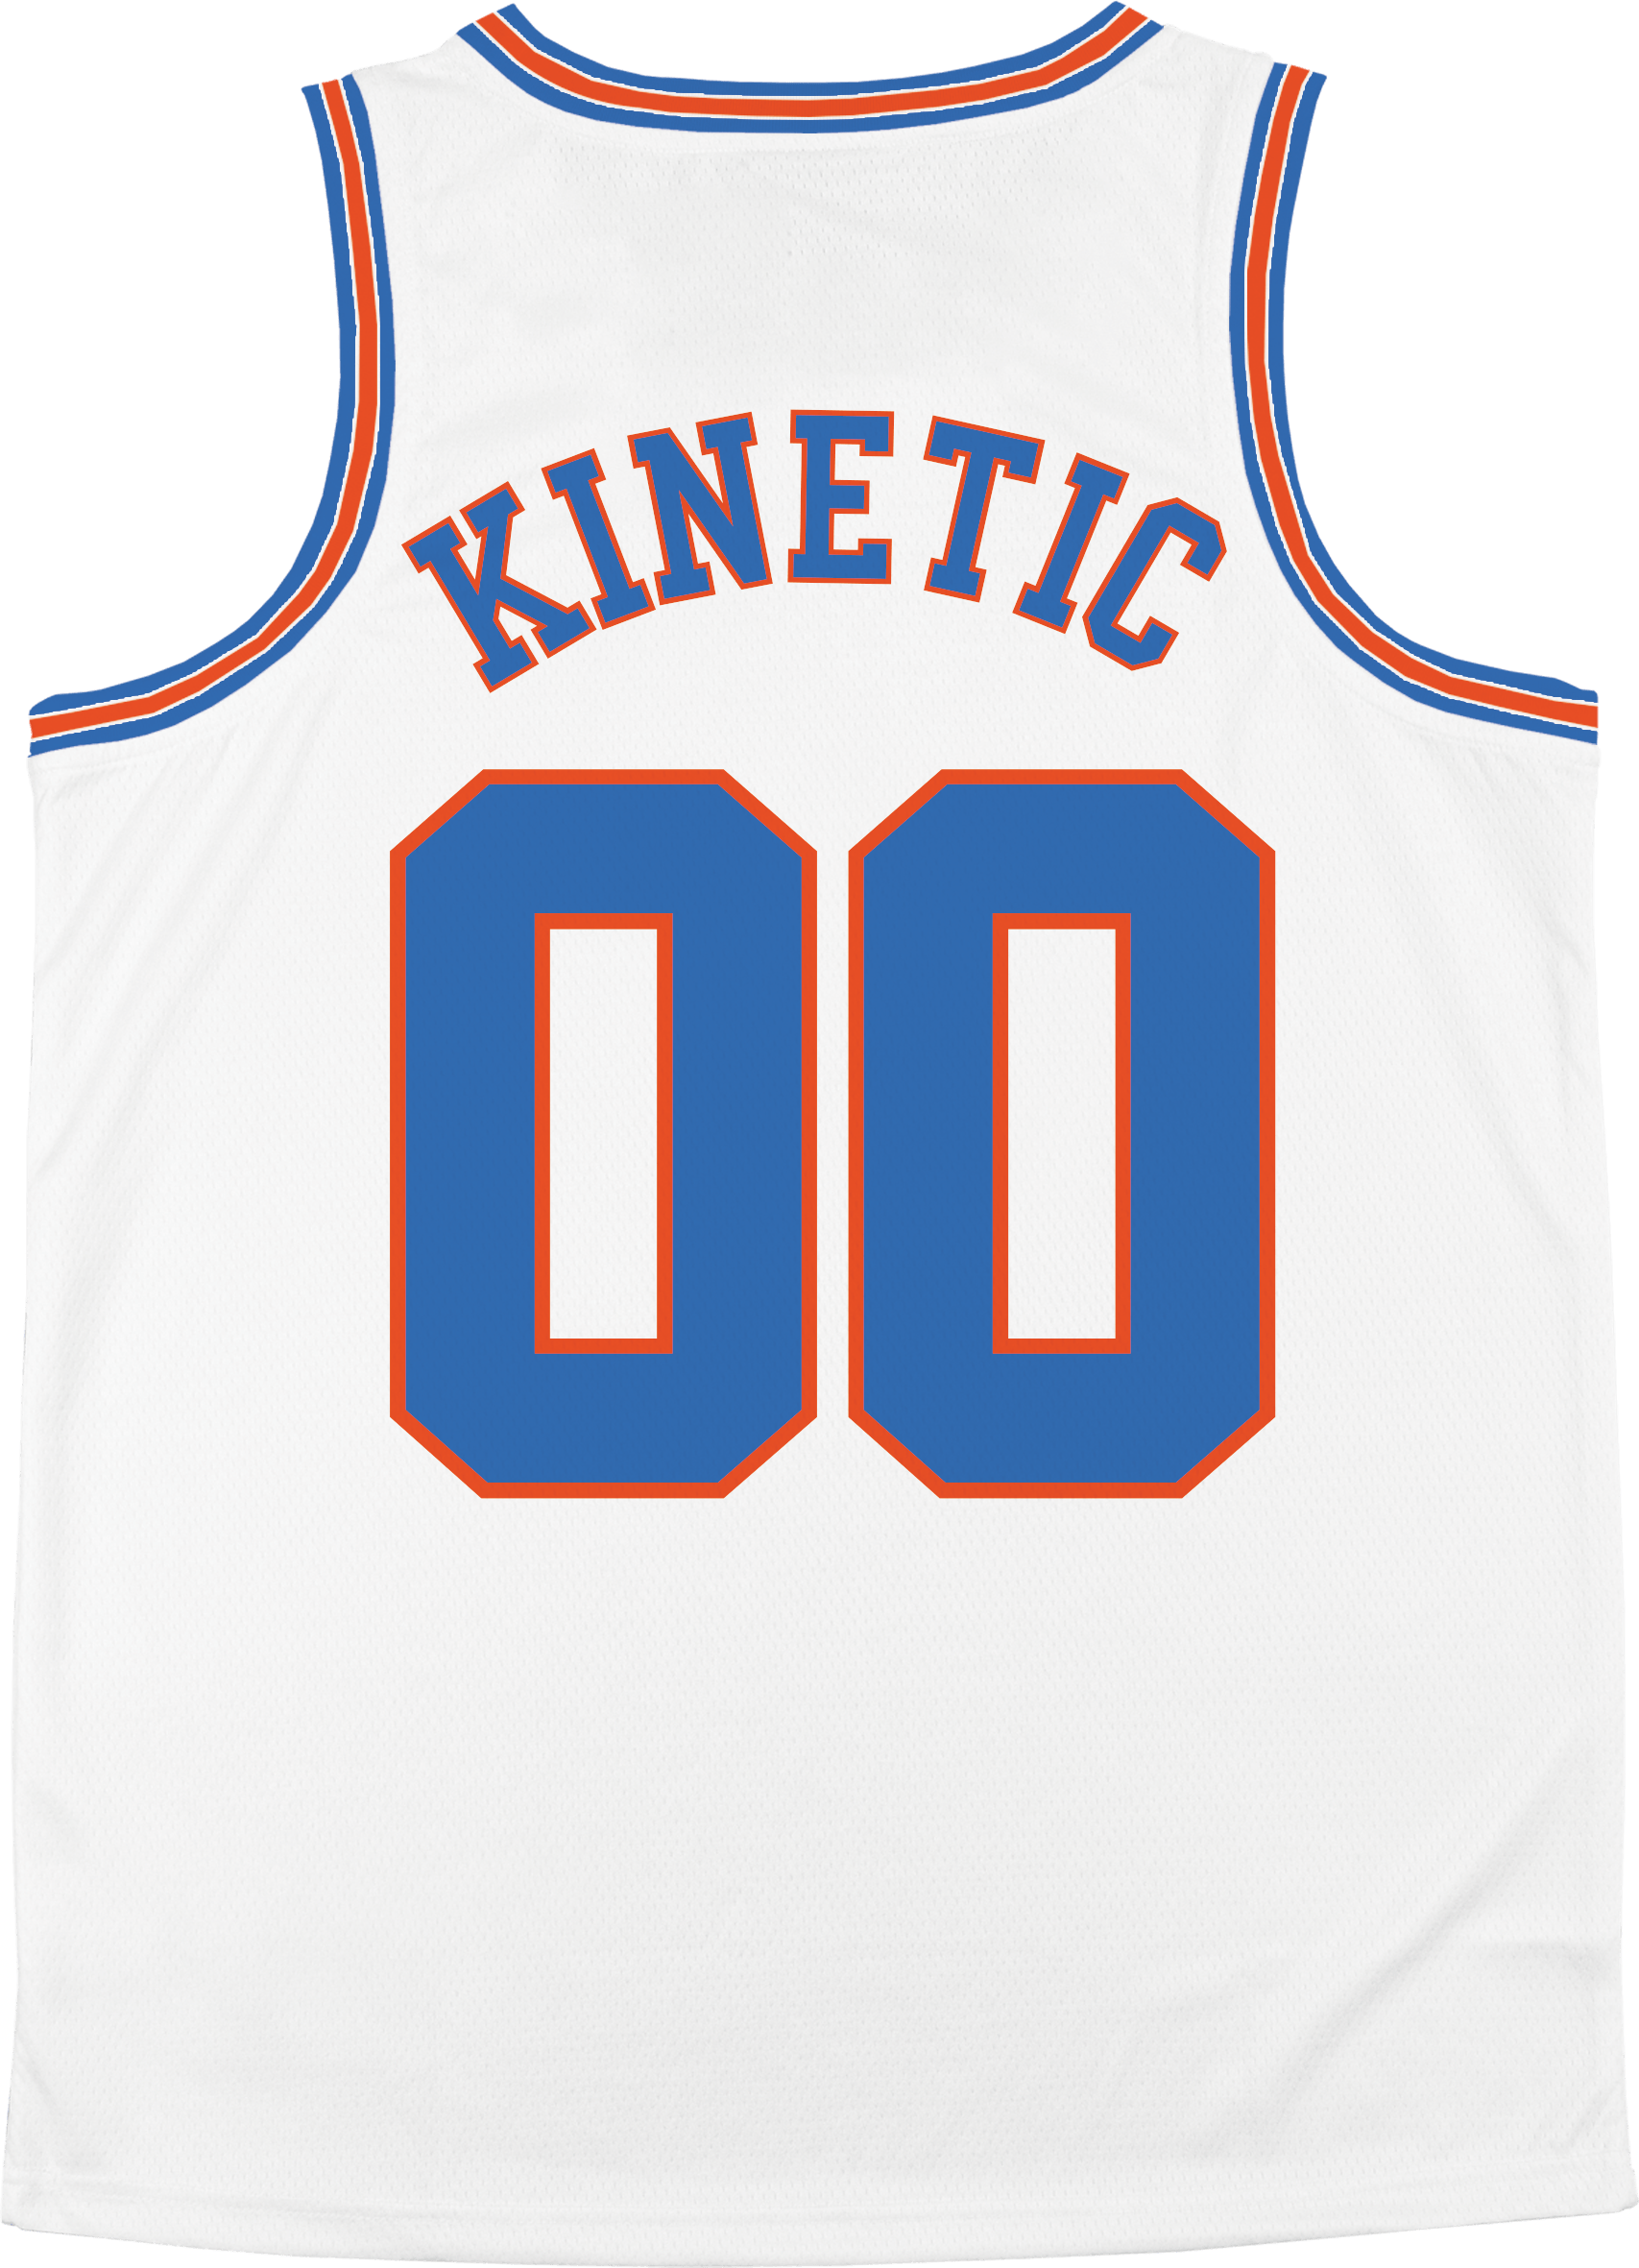 Phi Kappa Tau - Vintage Basketball Jersey - Kinetic Society